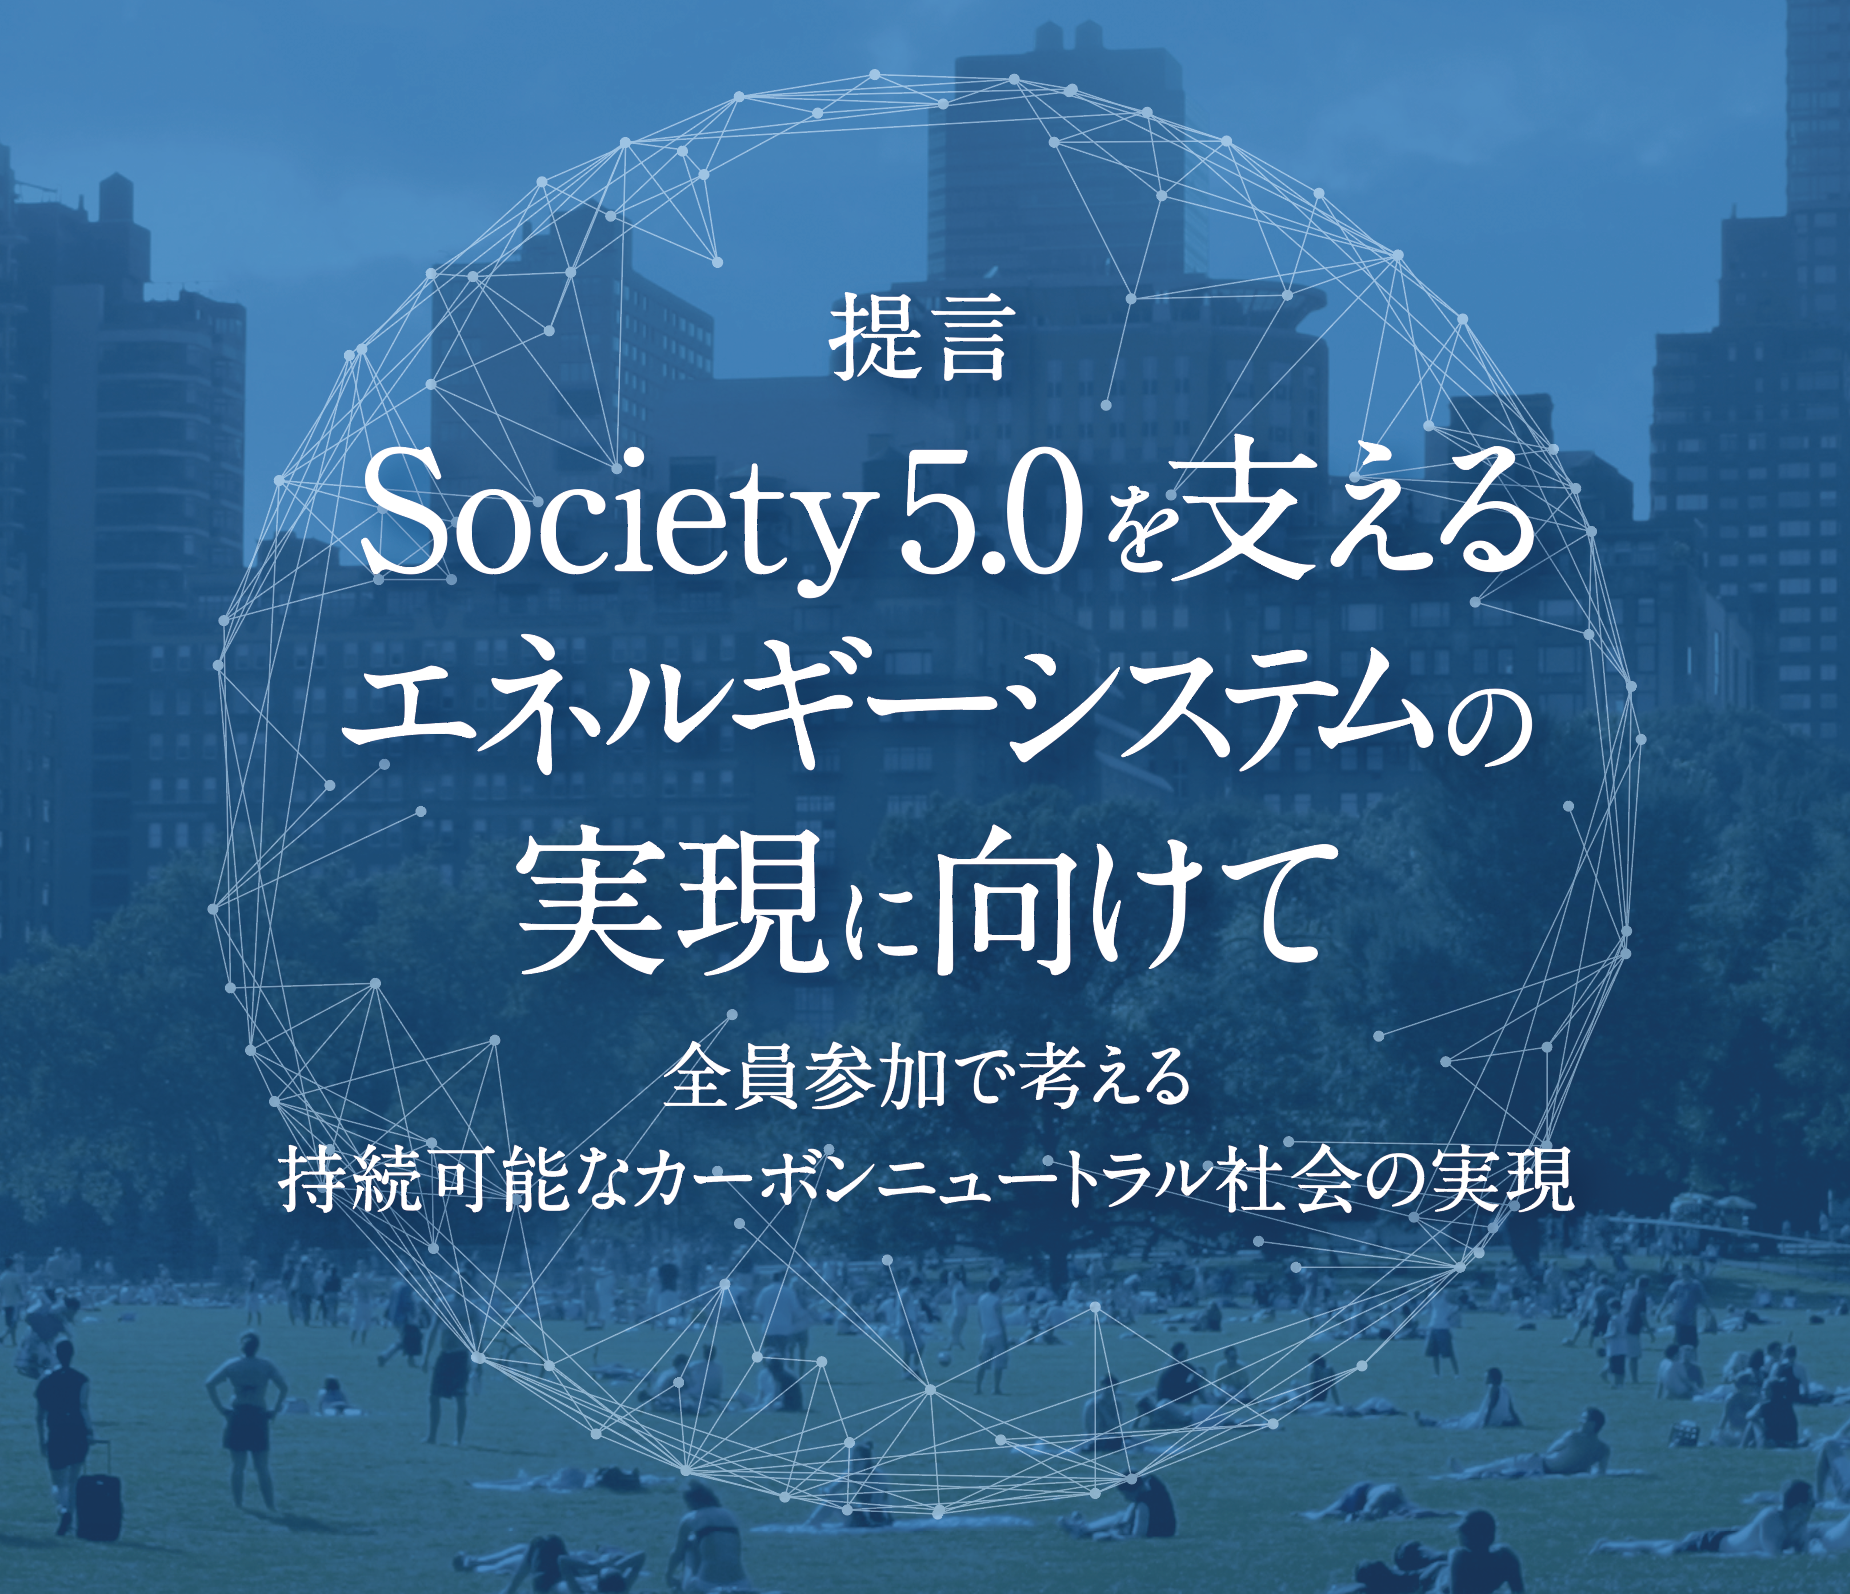 提言書「Society 5.0を支えるエネルギーシステムの実現に向けて」（第4版）を公開しました。